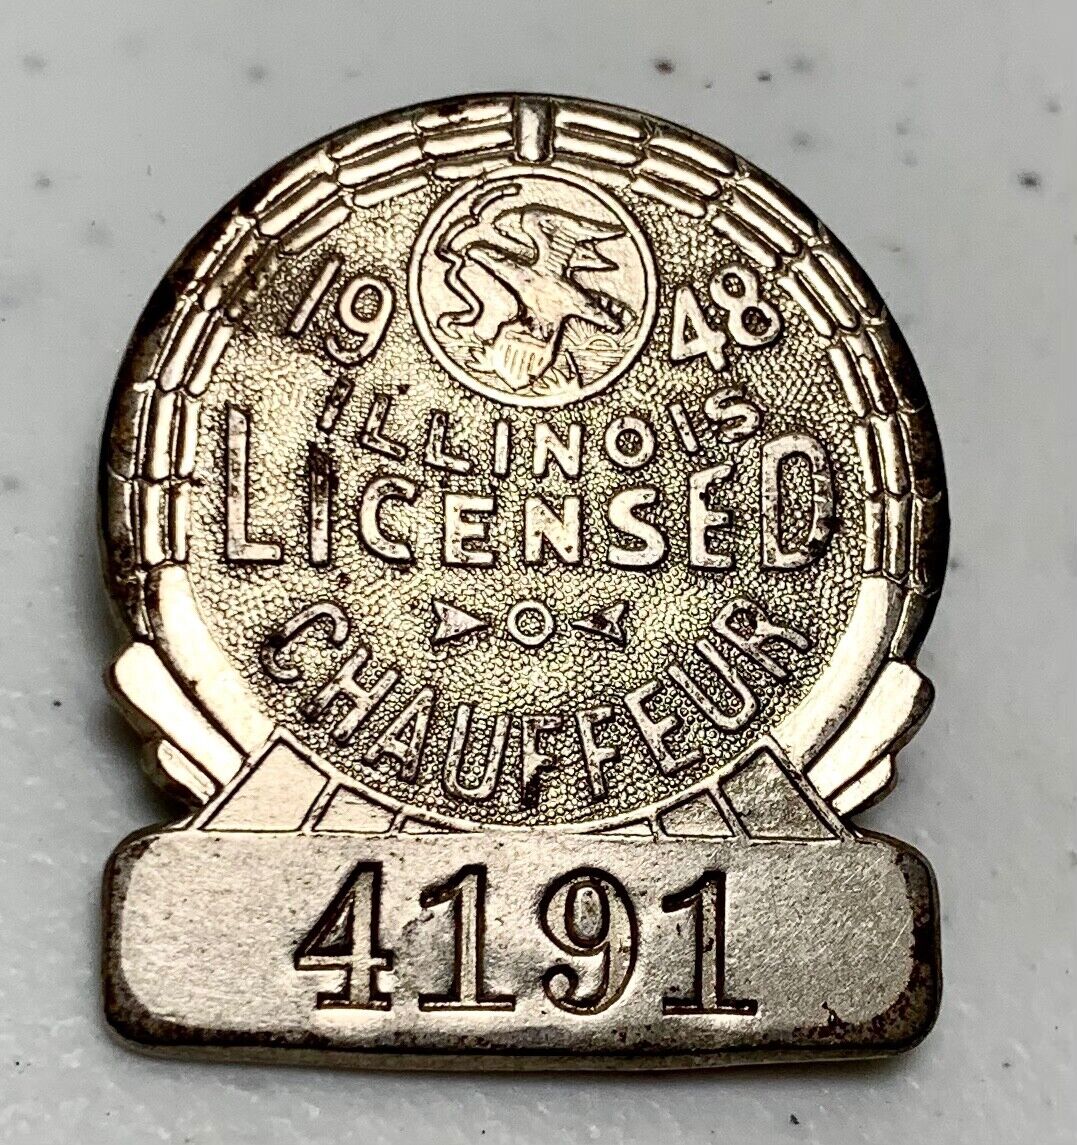 Vintage 1948 Chauffeur Licensed Badge #4181